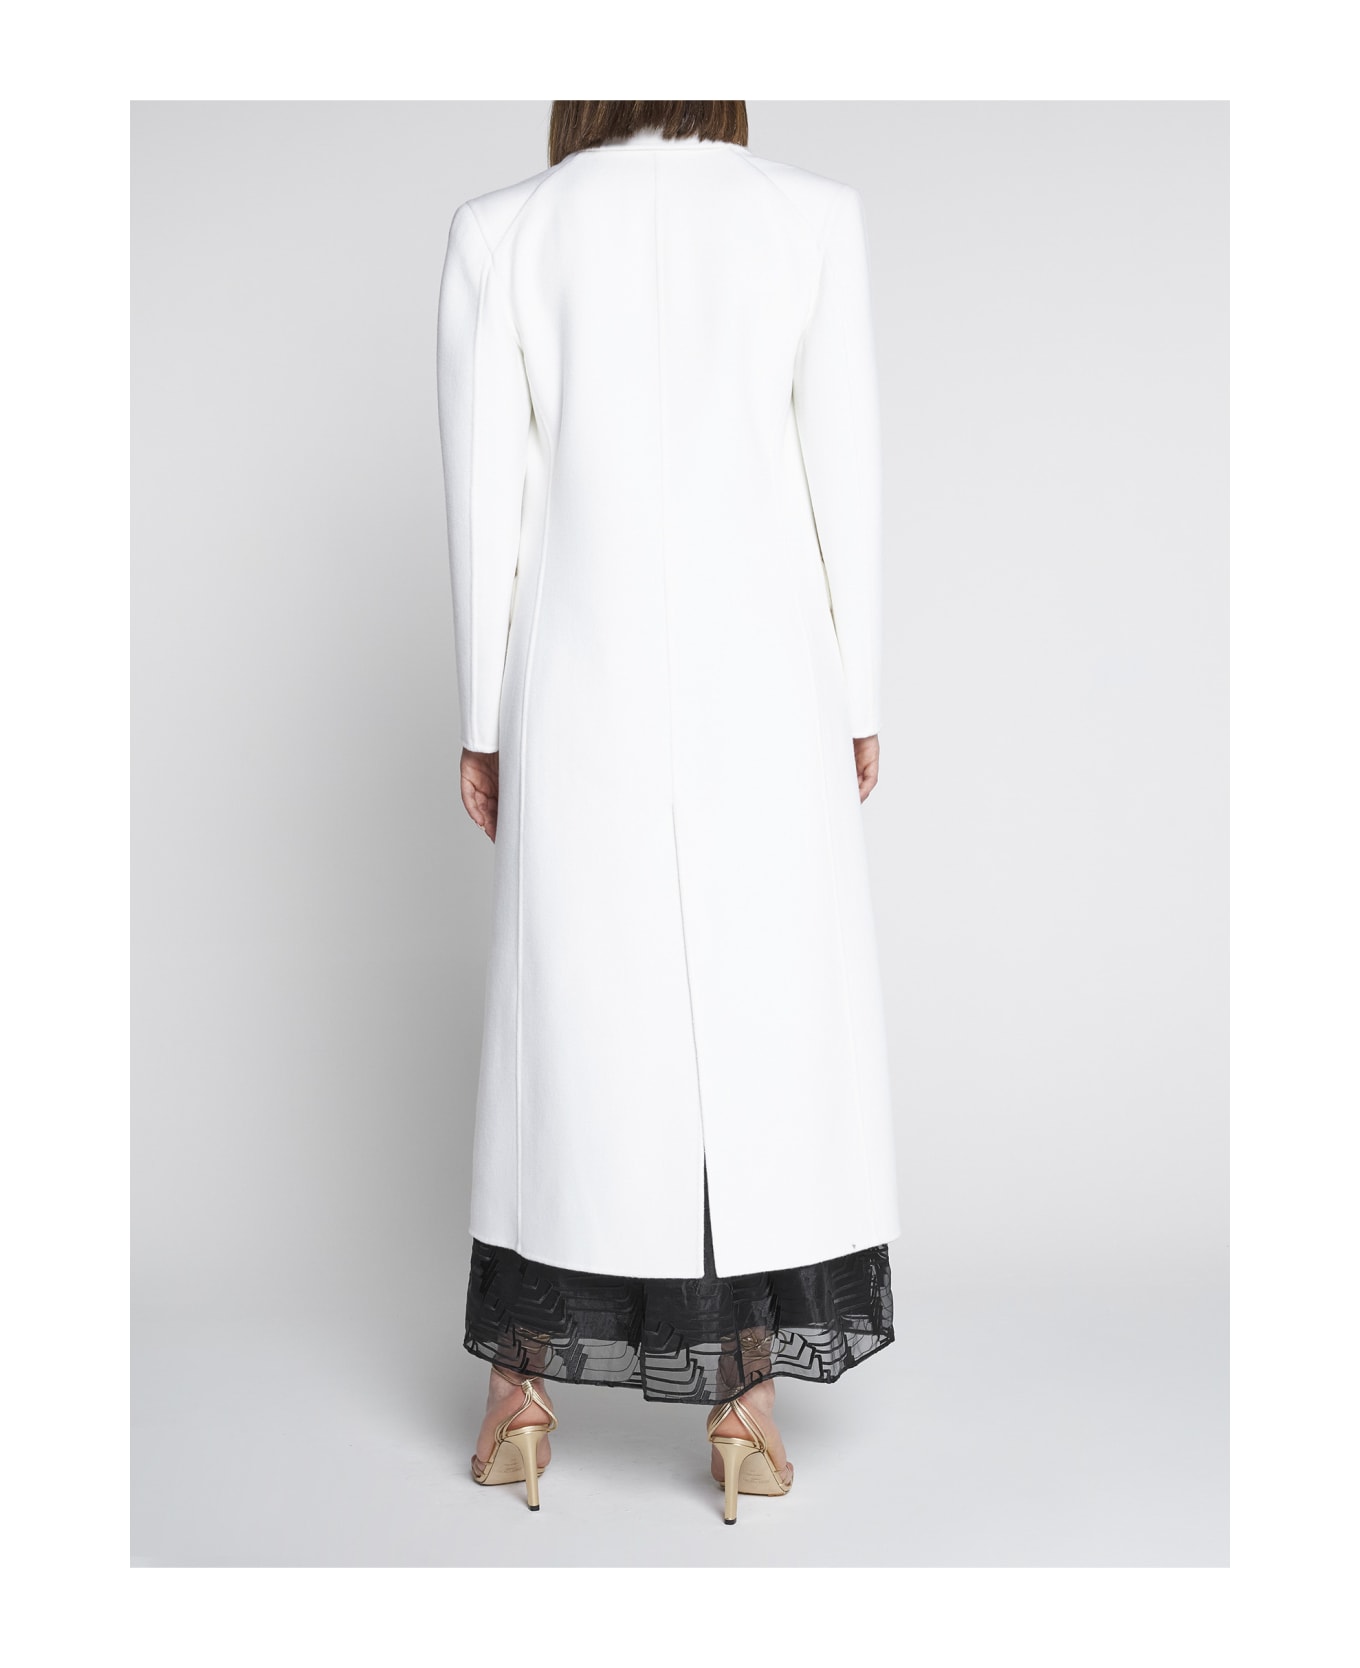 Giorgio Armani Coat - Brilliant white